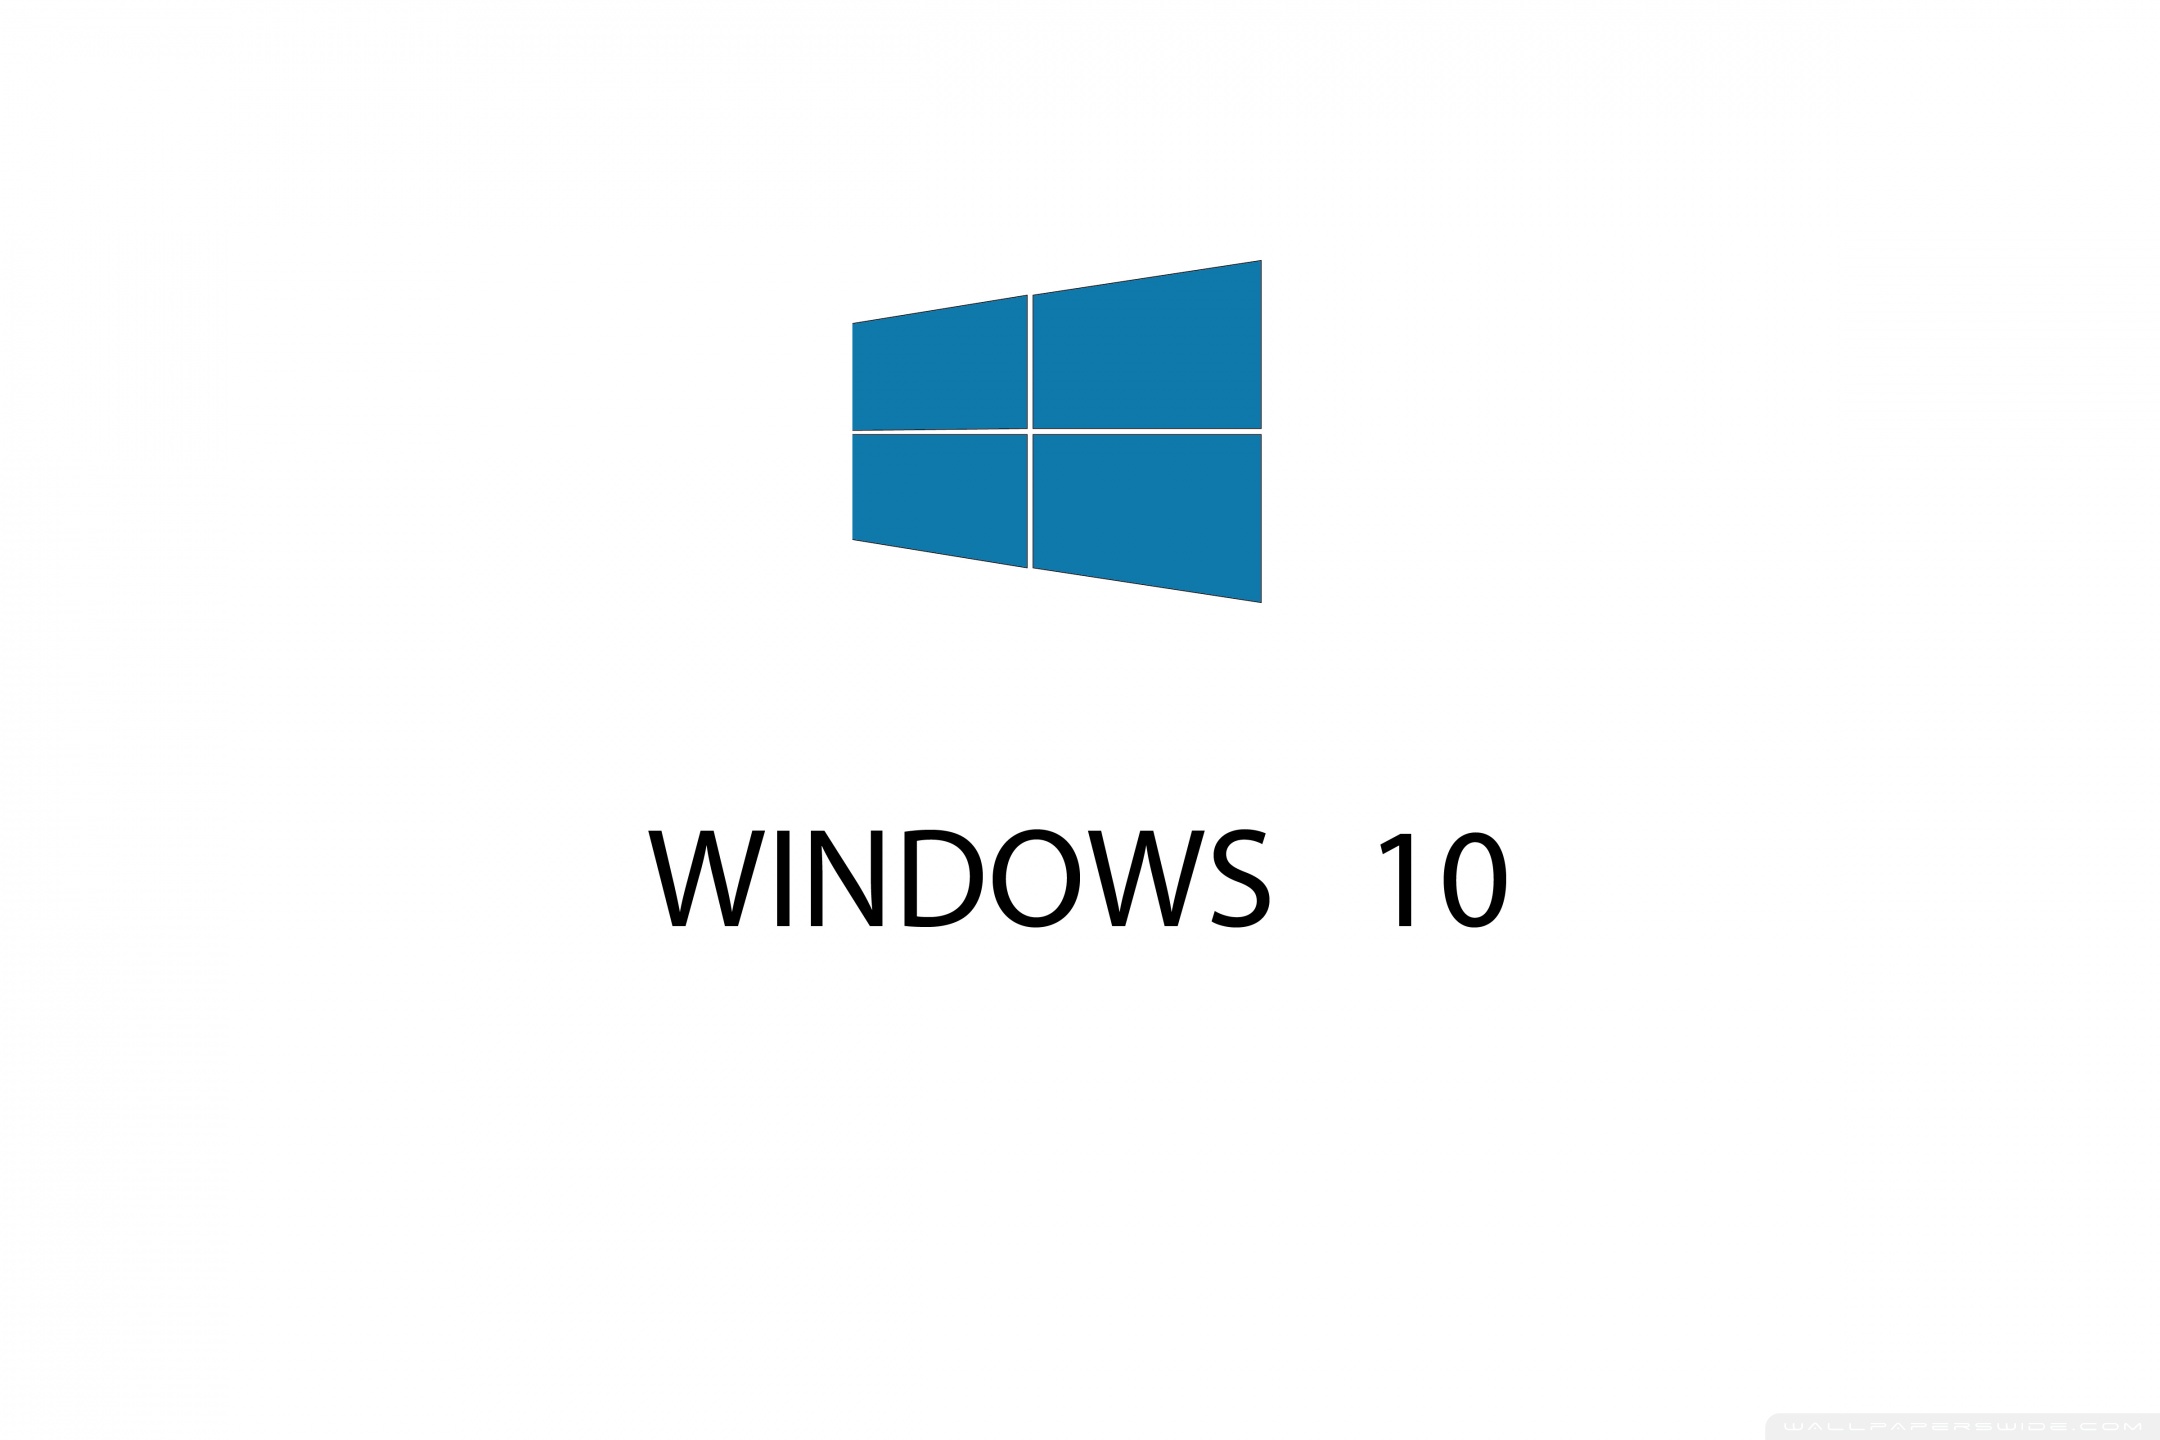 WINDOWS 10 Ultra HD Desktop Background Wallpaper for : Widescreen ...